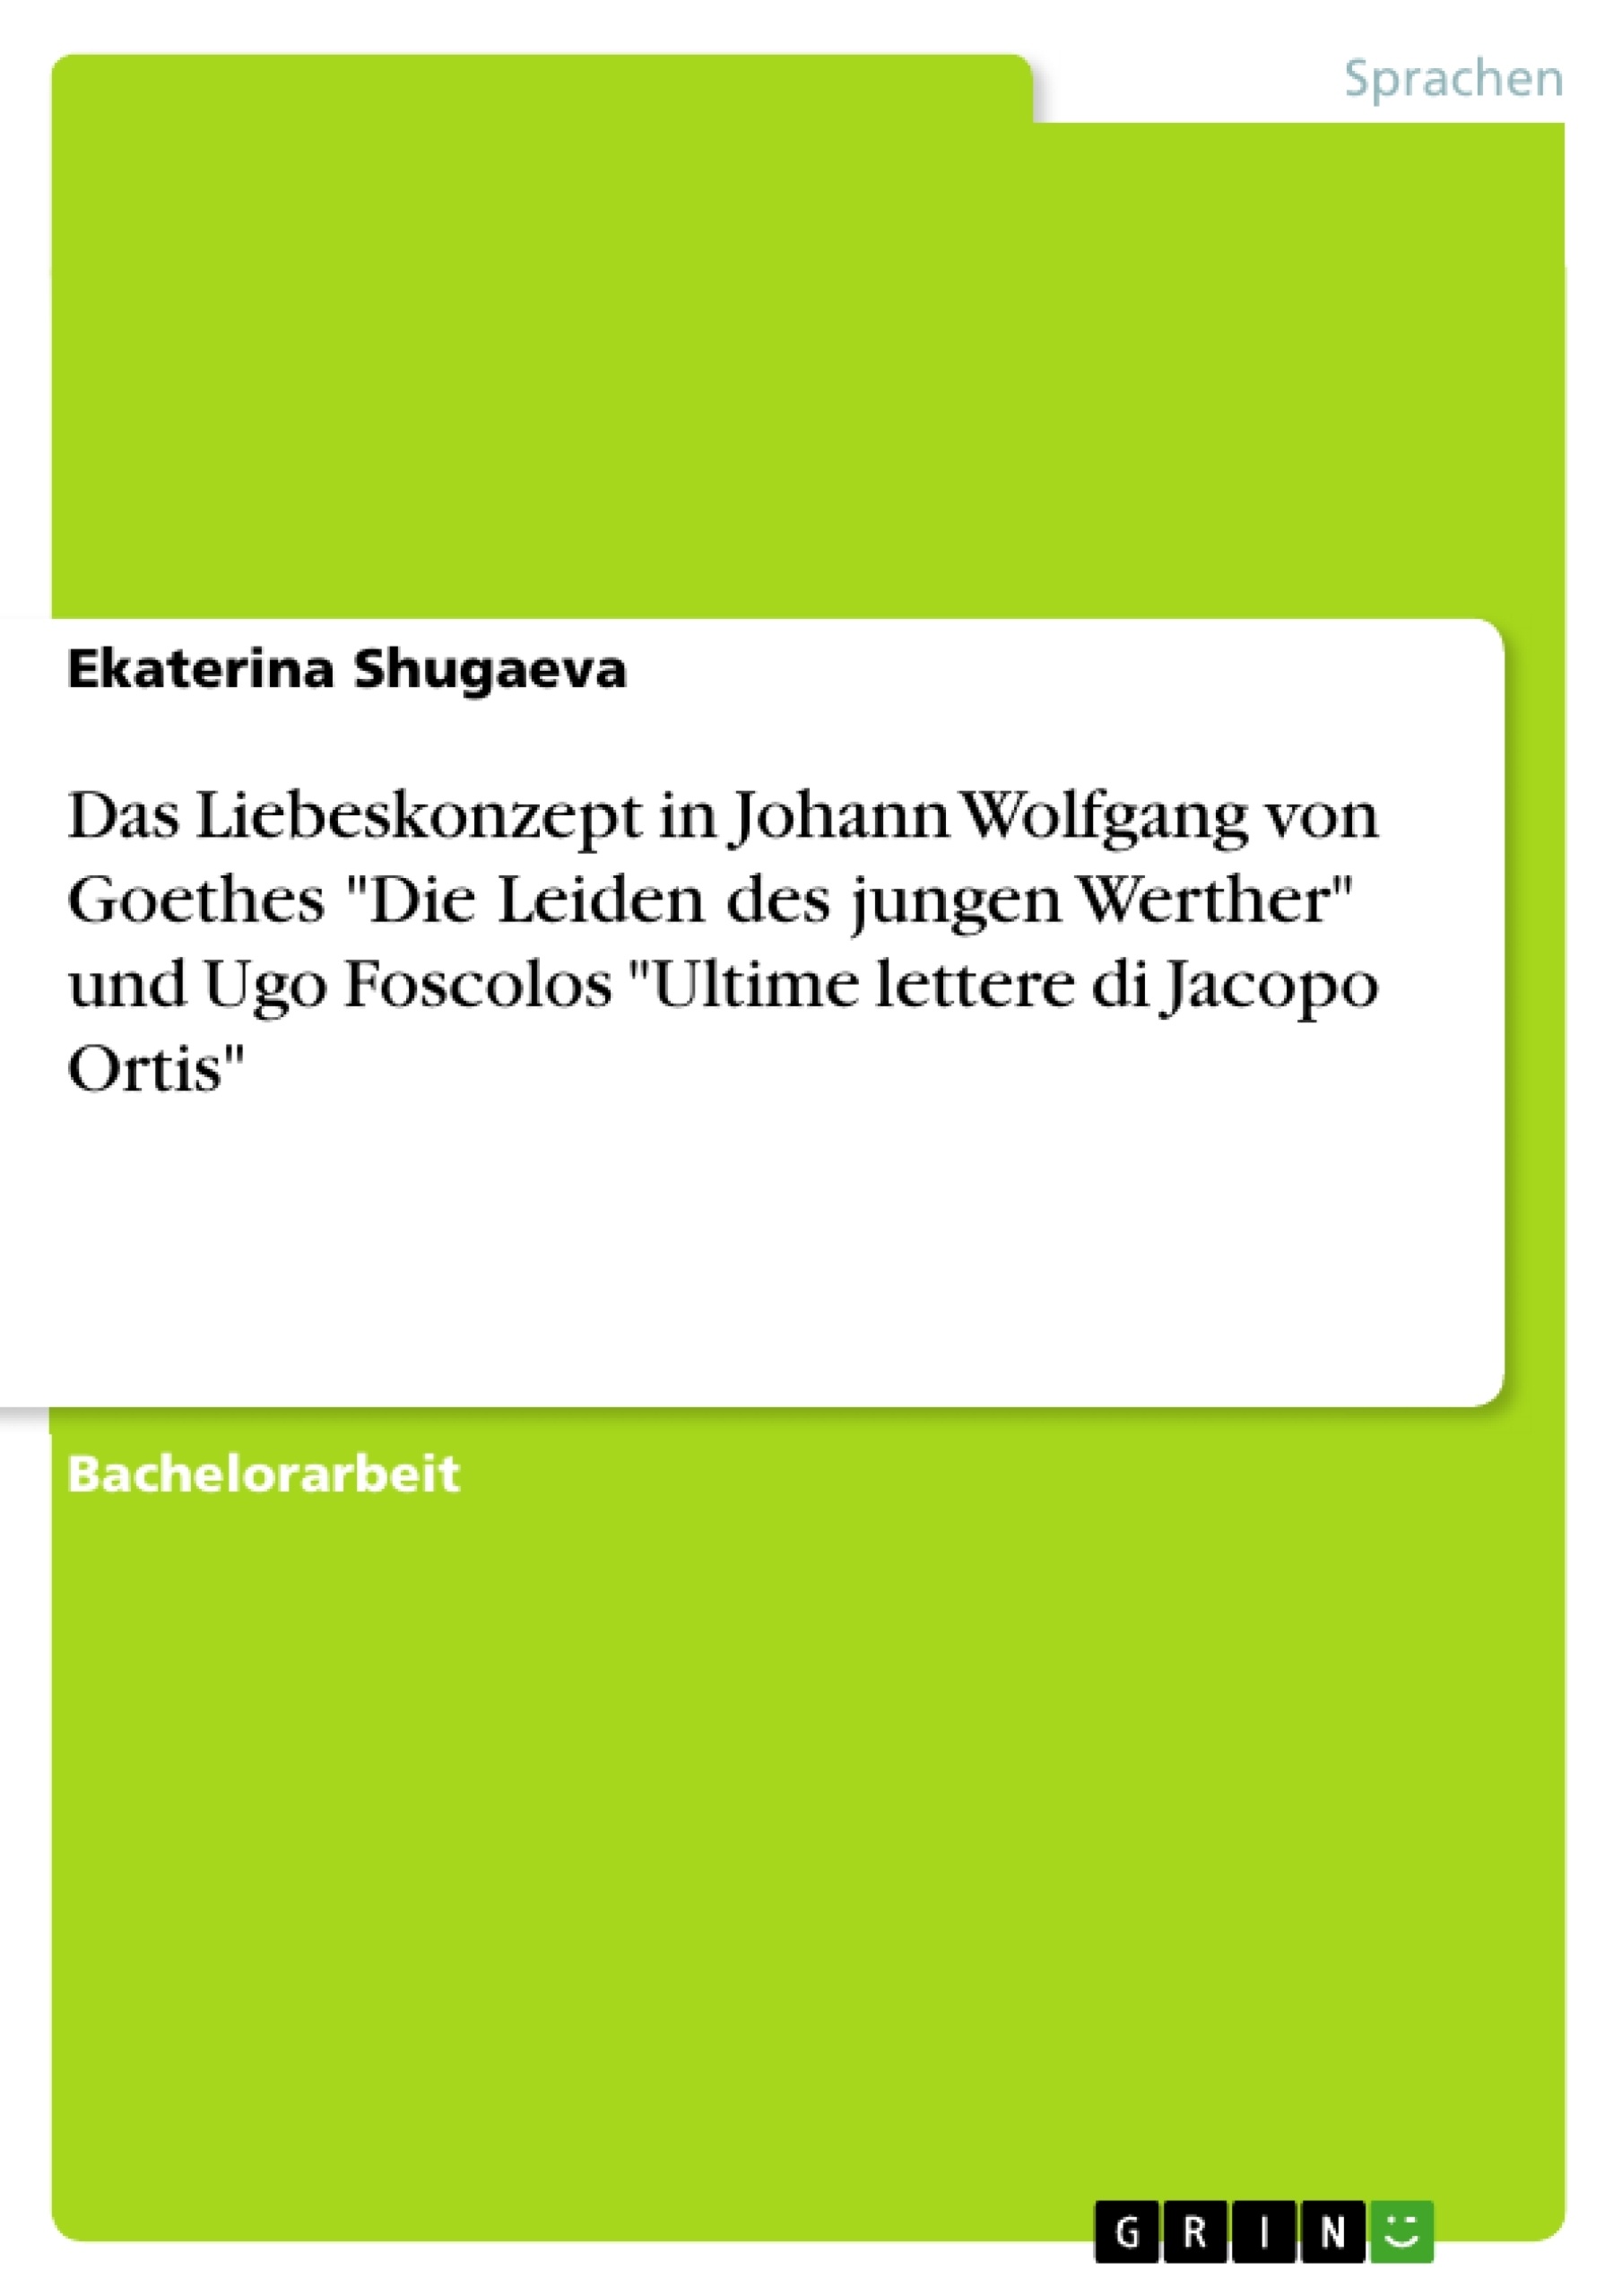 Titel: Das Liebeskonzept in Johann Wolfgang von Goethes "Die Leiden des jungen Werther" und Ugo Foscolos "Ultime lettere di Jacopo Ortis"